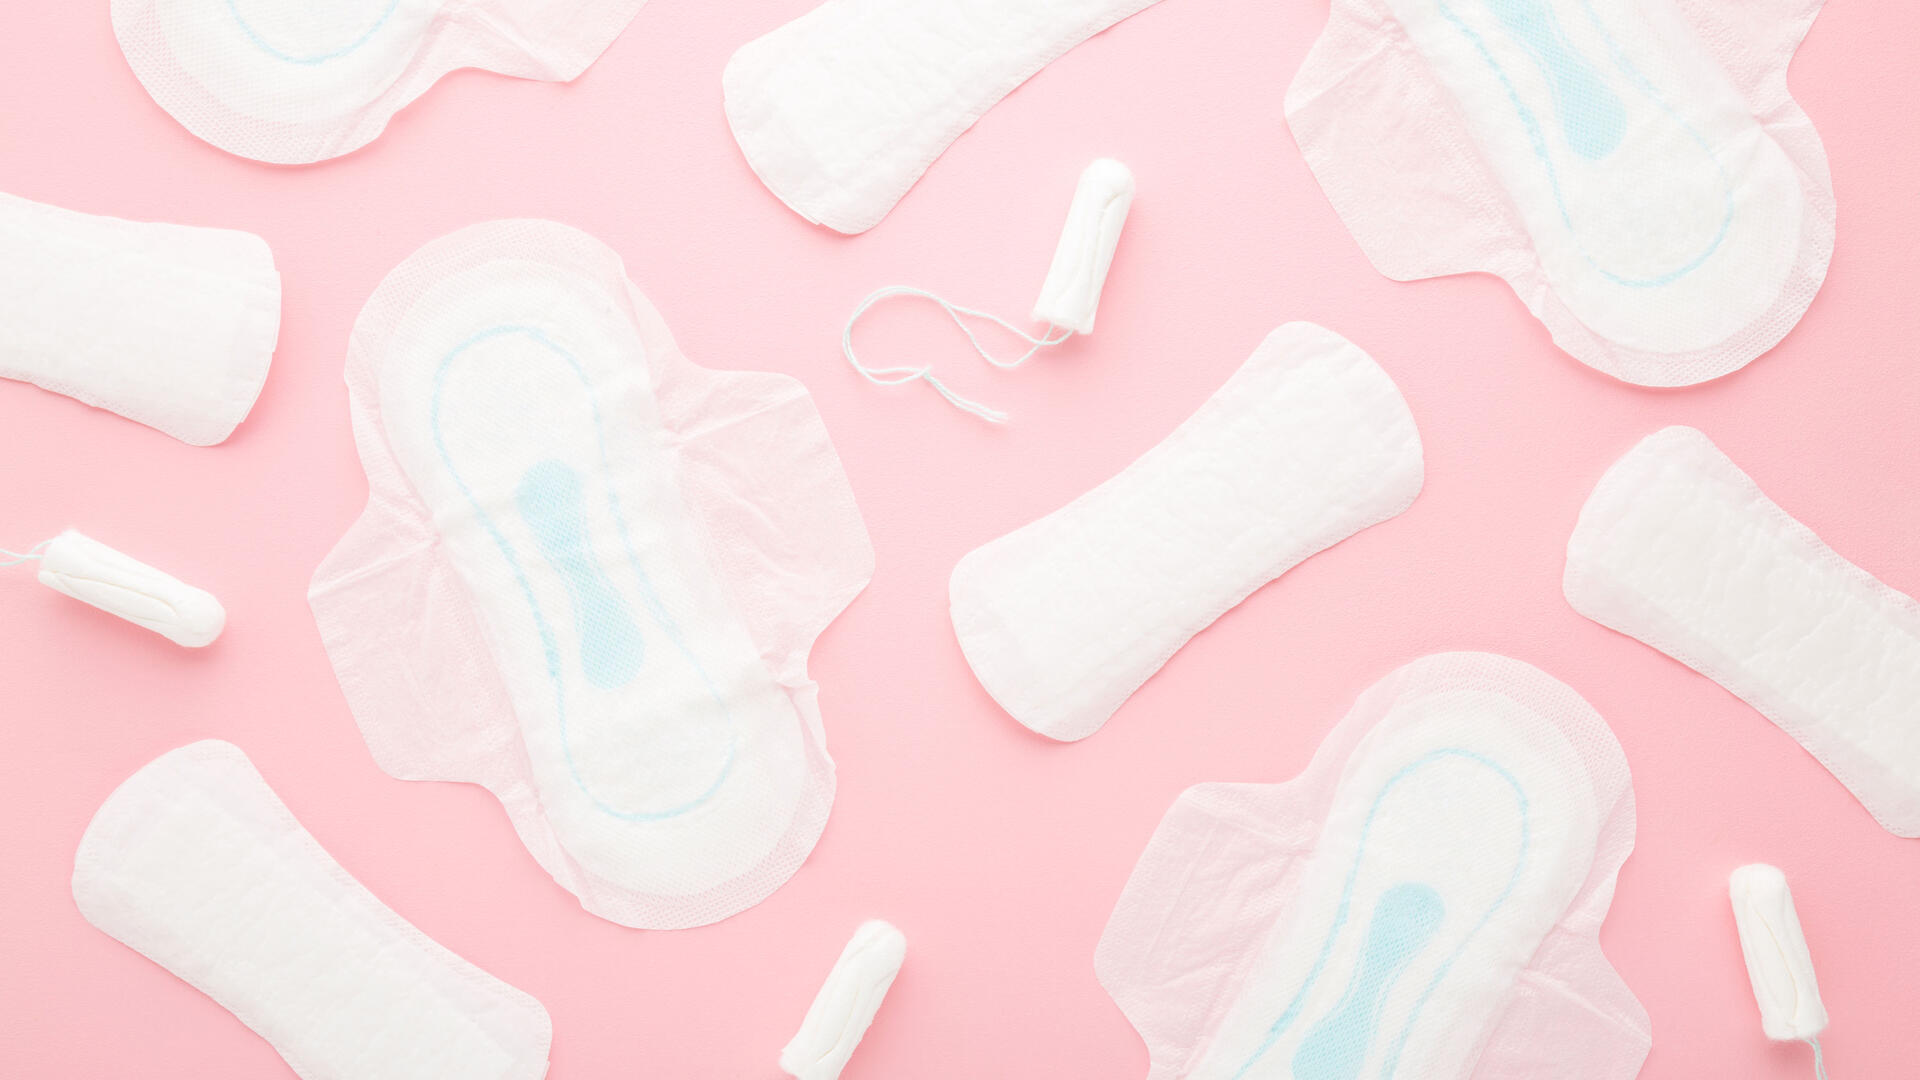 Roze achtergrond met een aantal menstruatieproducten er op uitgestald